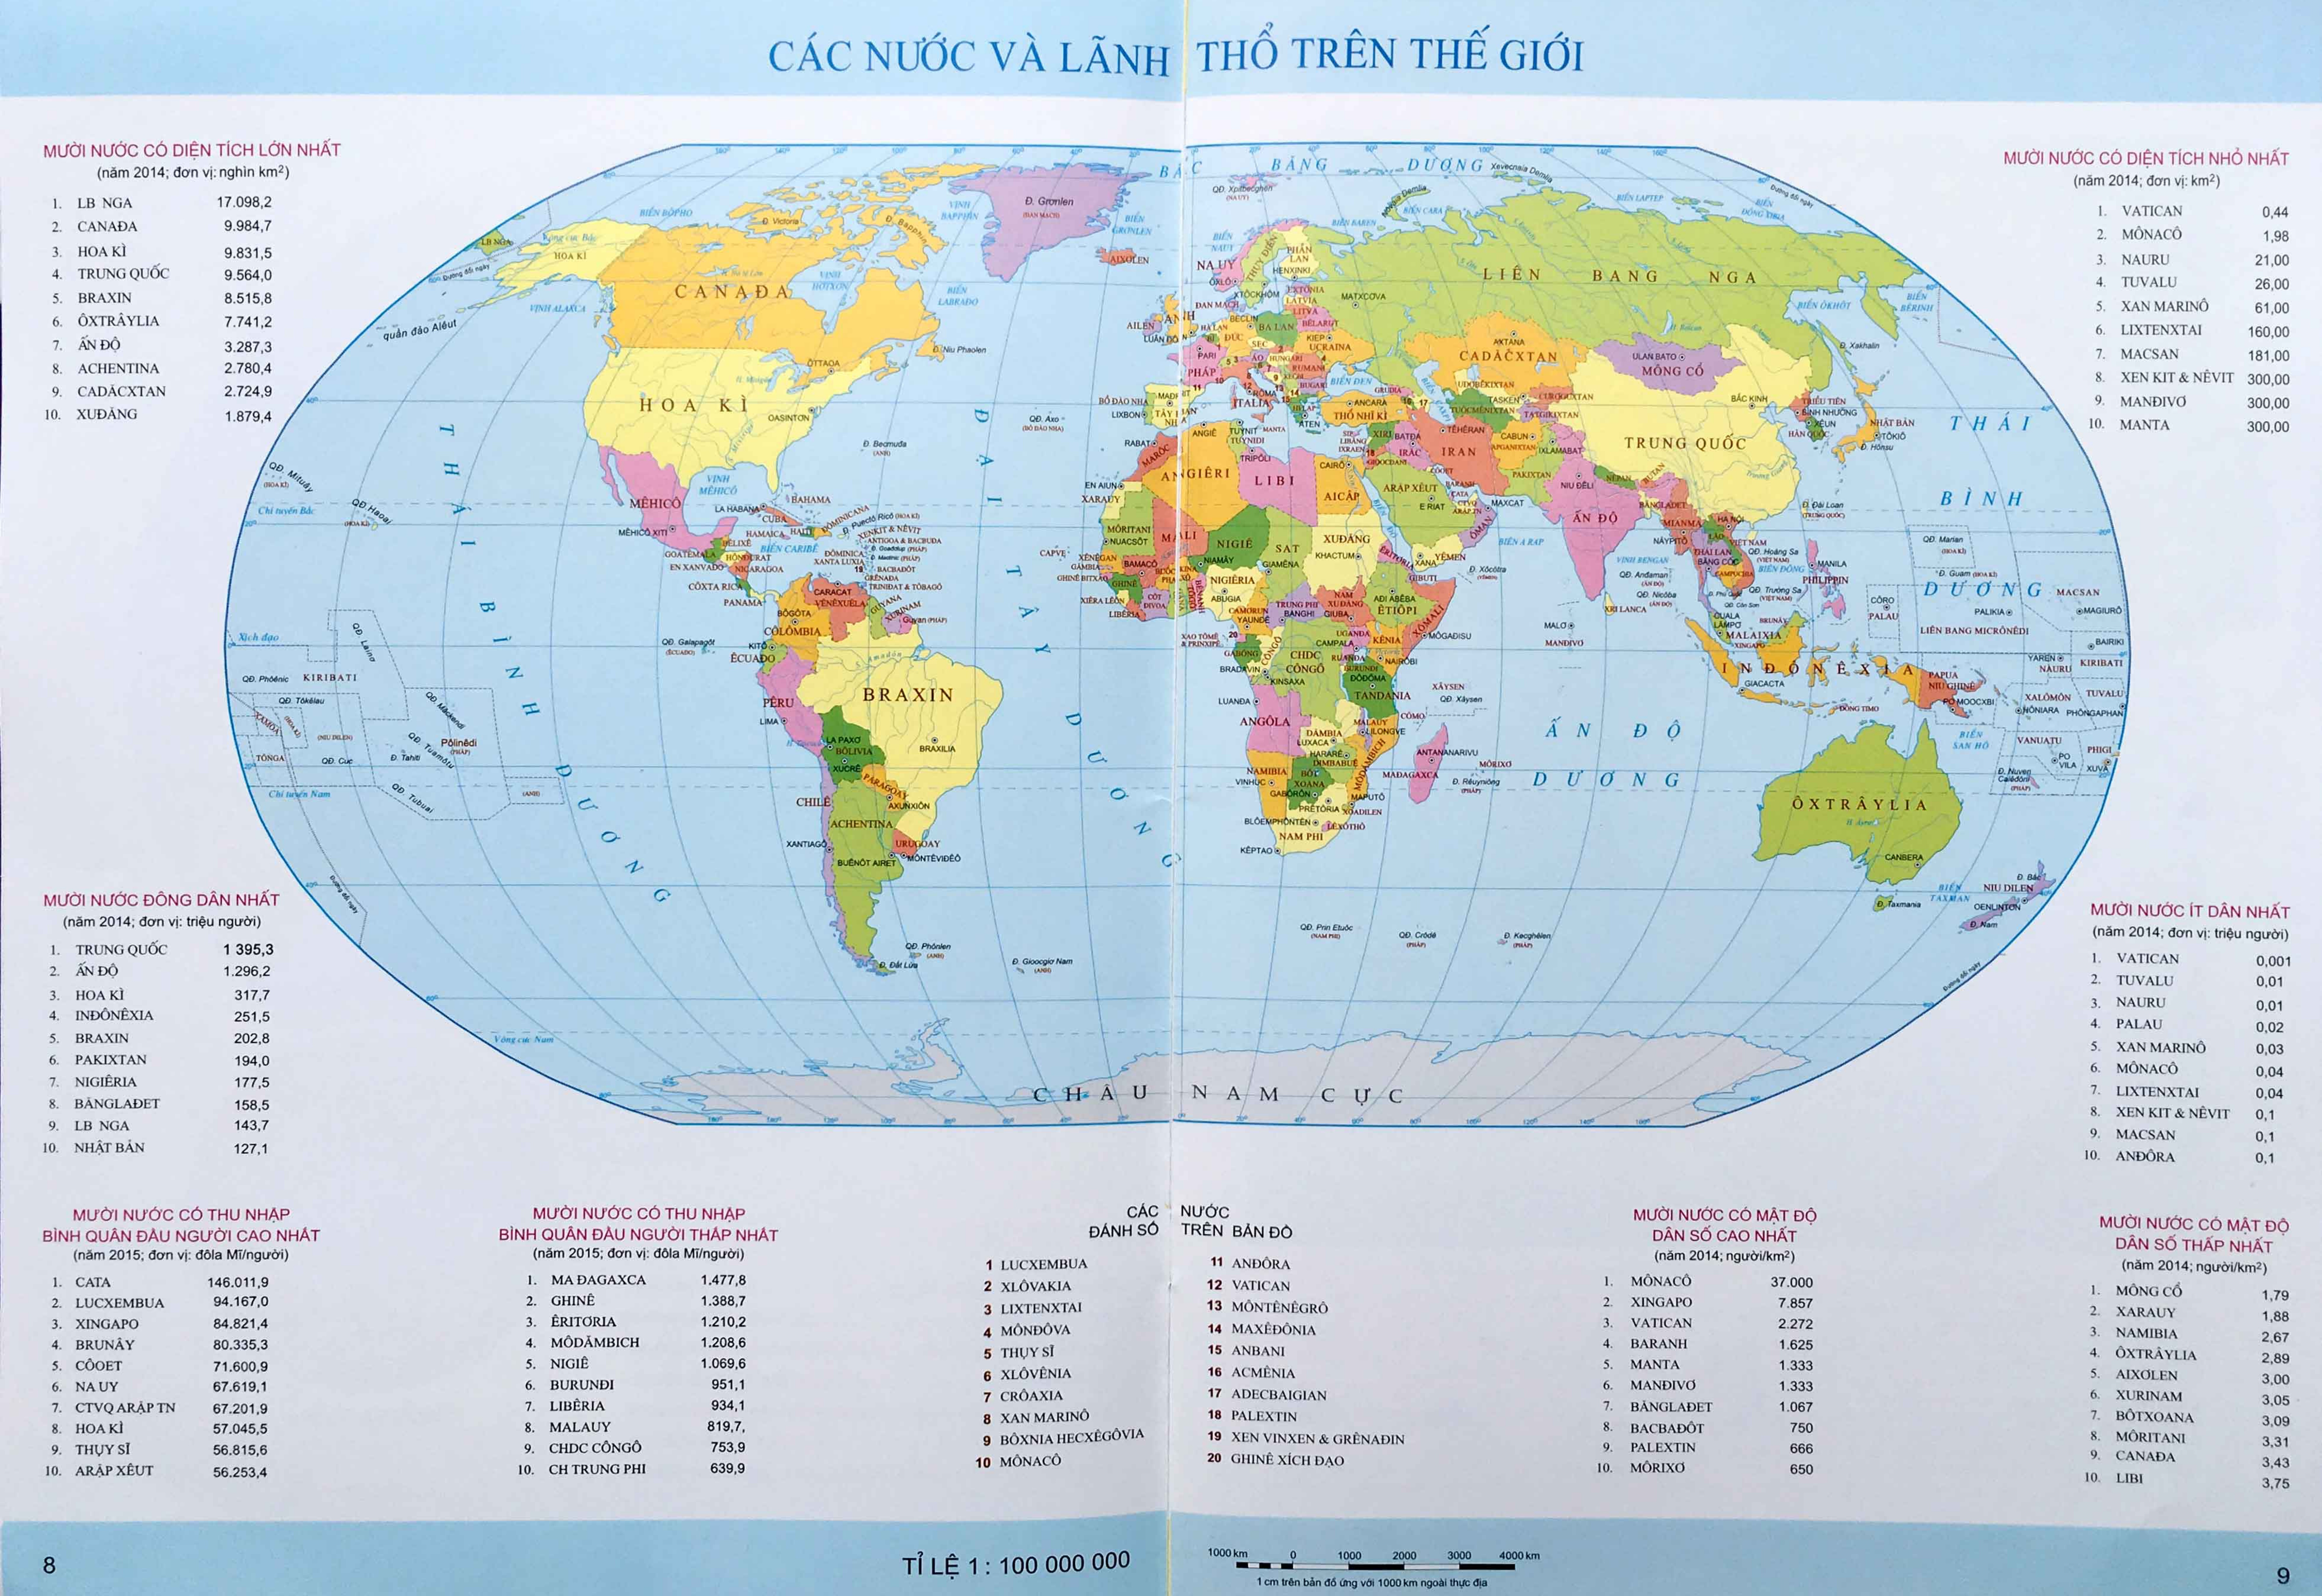 Bản đồ thế giới miễn phí: Với bản đồ thế giới miễn phí, bạn sẽ có cơ hội khám phá các quốc gia, địa danh và văn hóa khác nhau, mà không cần phải tốn quá nhiều tiền. Hãy tận dụng cơ hội này để bắt đầu hành trình chinh phục thế giới.